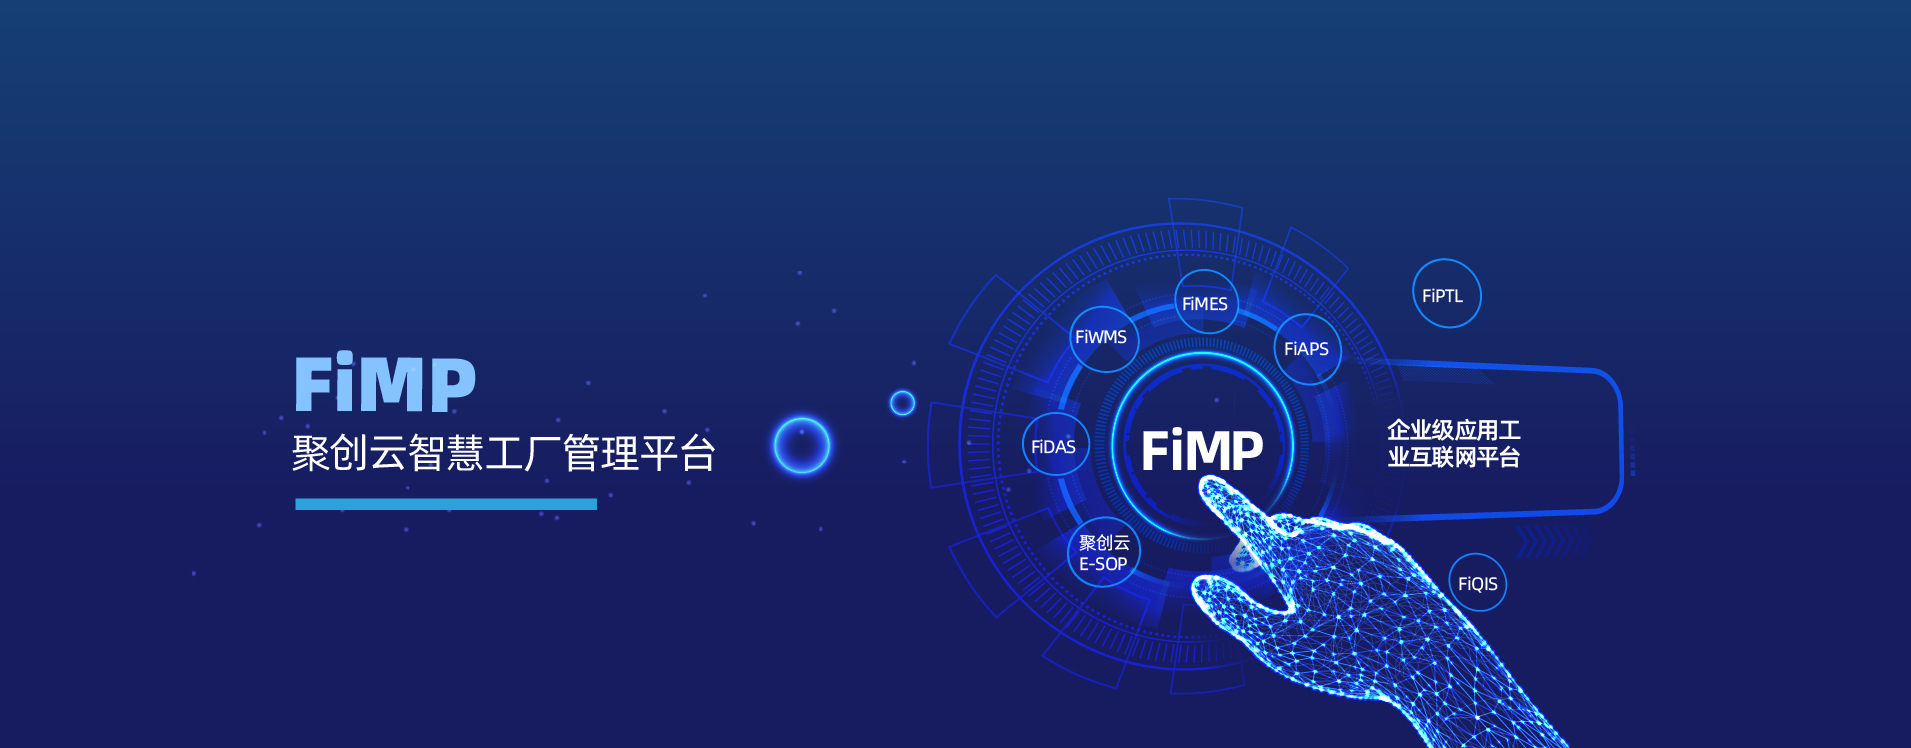 佳帆FiMP管理平台_聚创云工业互联网平台_佳帆科技